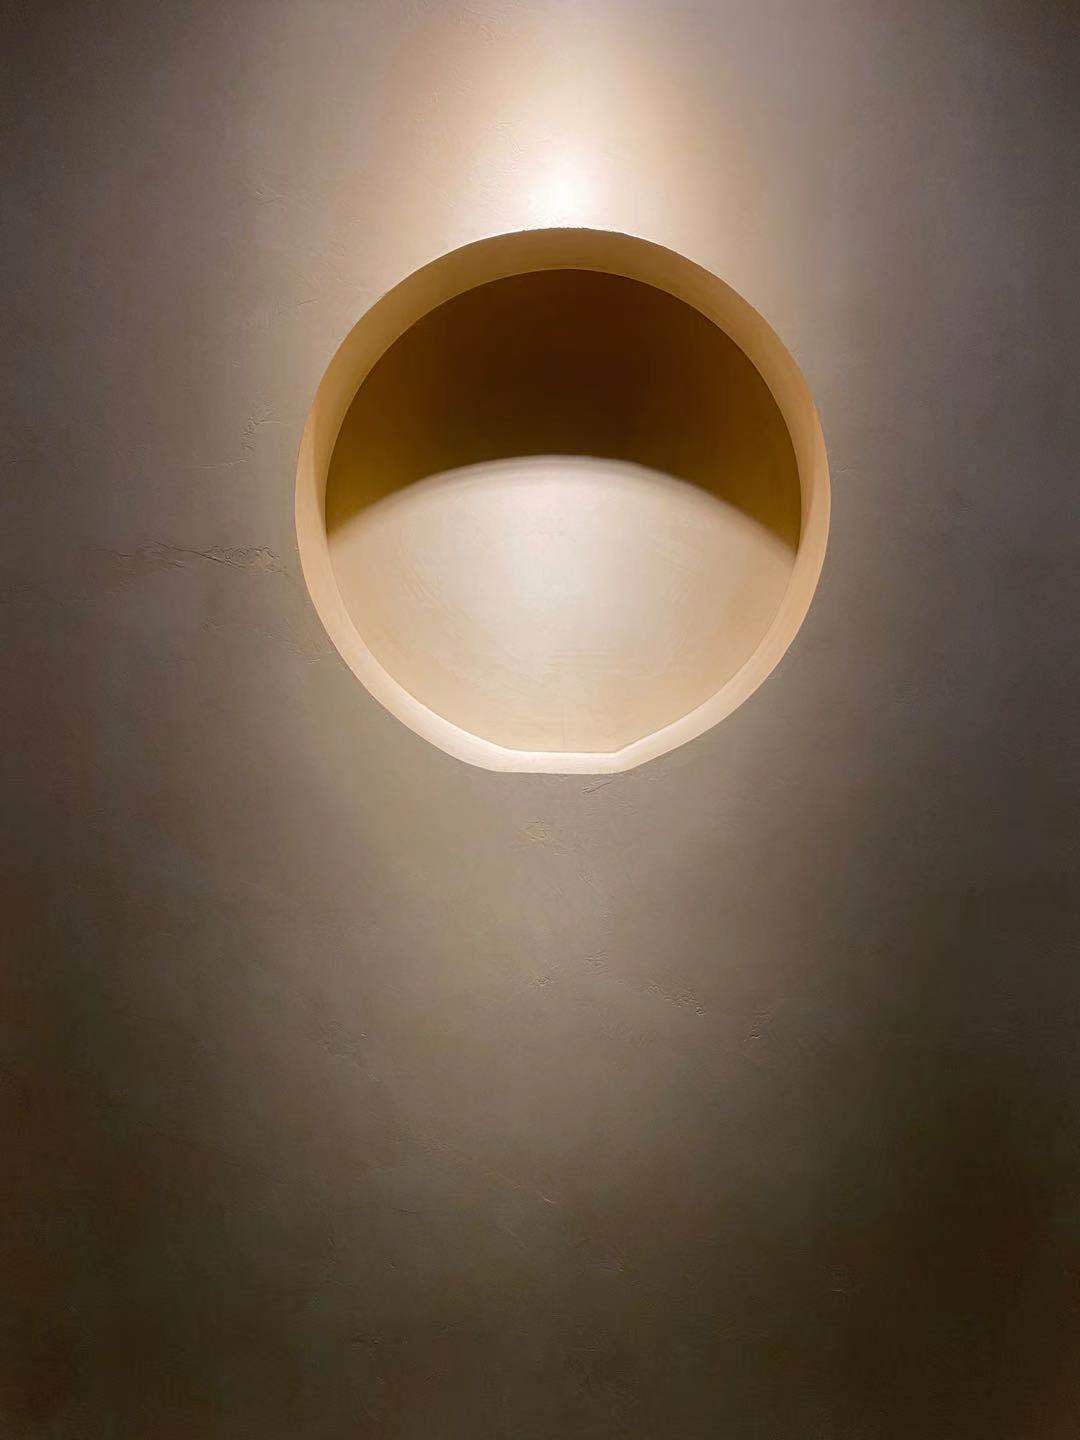 Minimalist stilin hakim olduğu bir evin duvarında, kaplamayı vurgulayan bir aydınlatma ile birlikte mikro çimento kullanımı